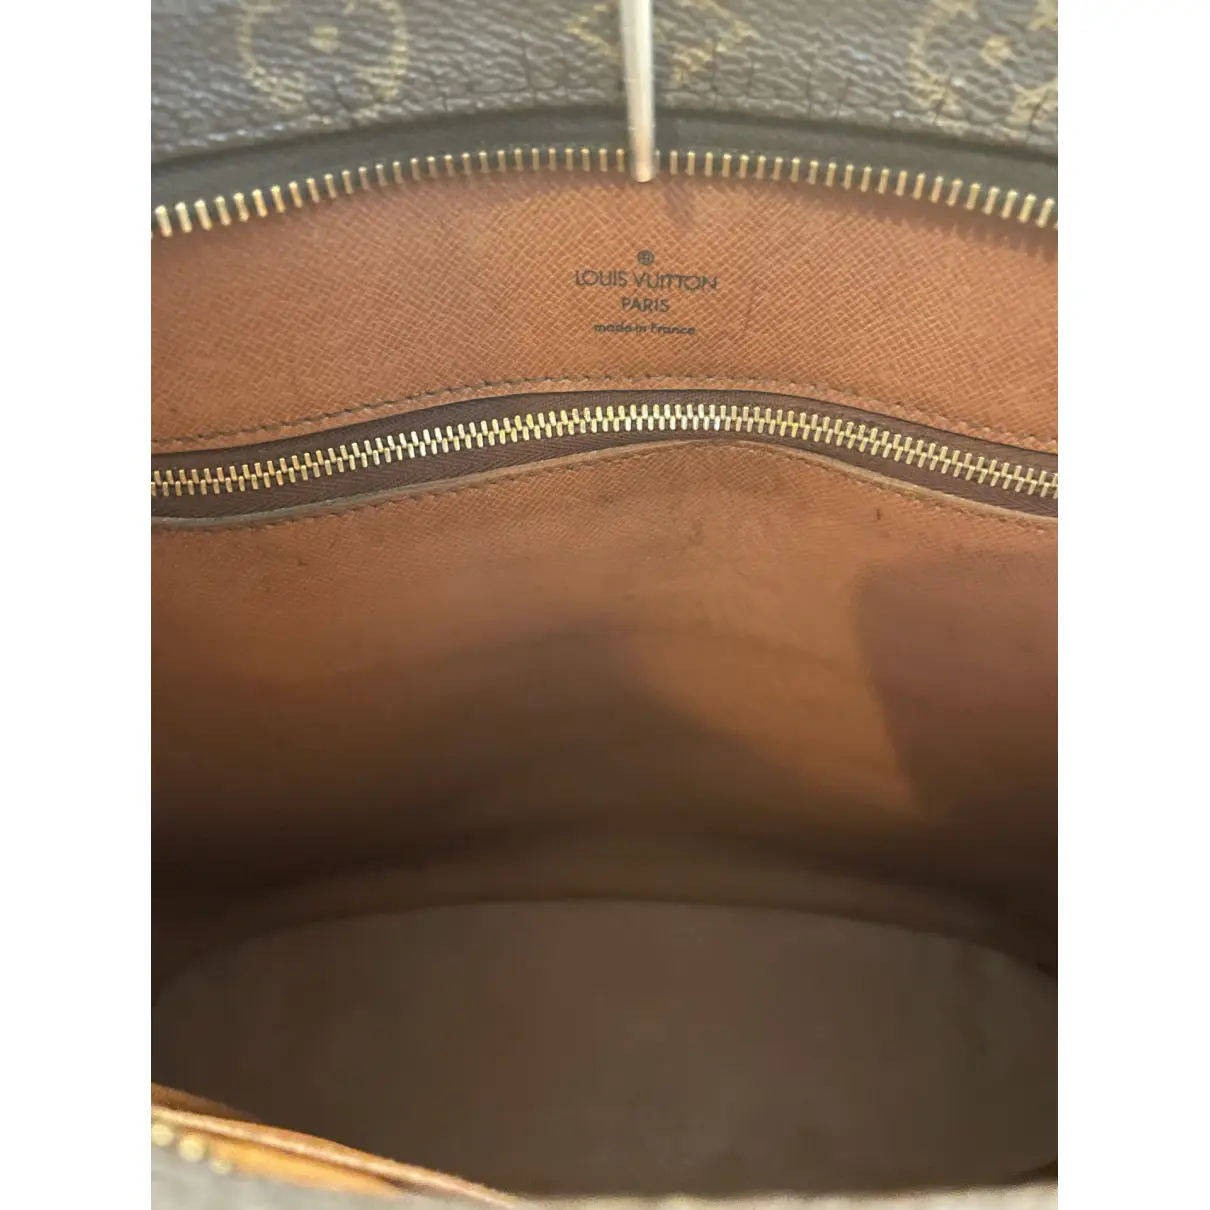 Babylone vintage cloth handbag Louis Vuitton - Vintage